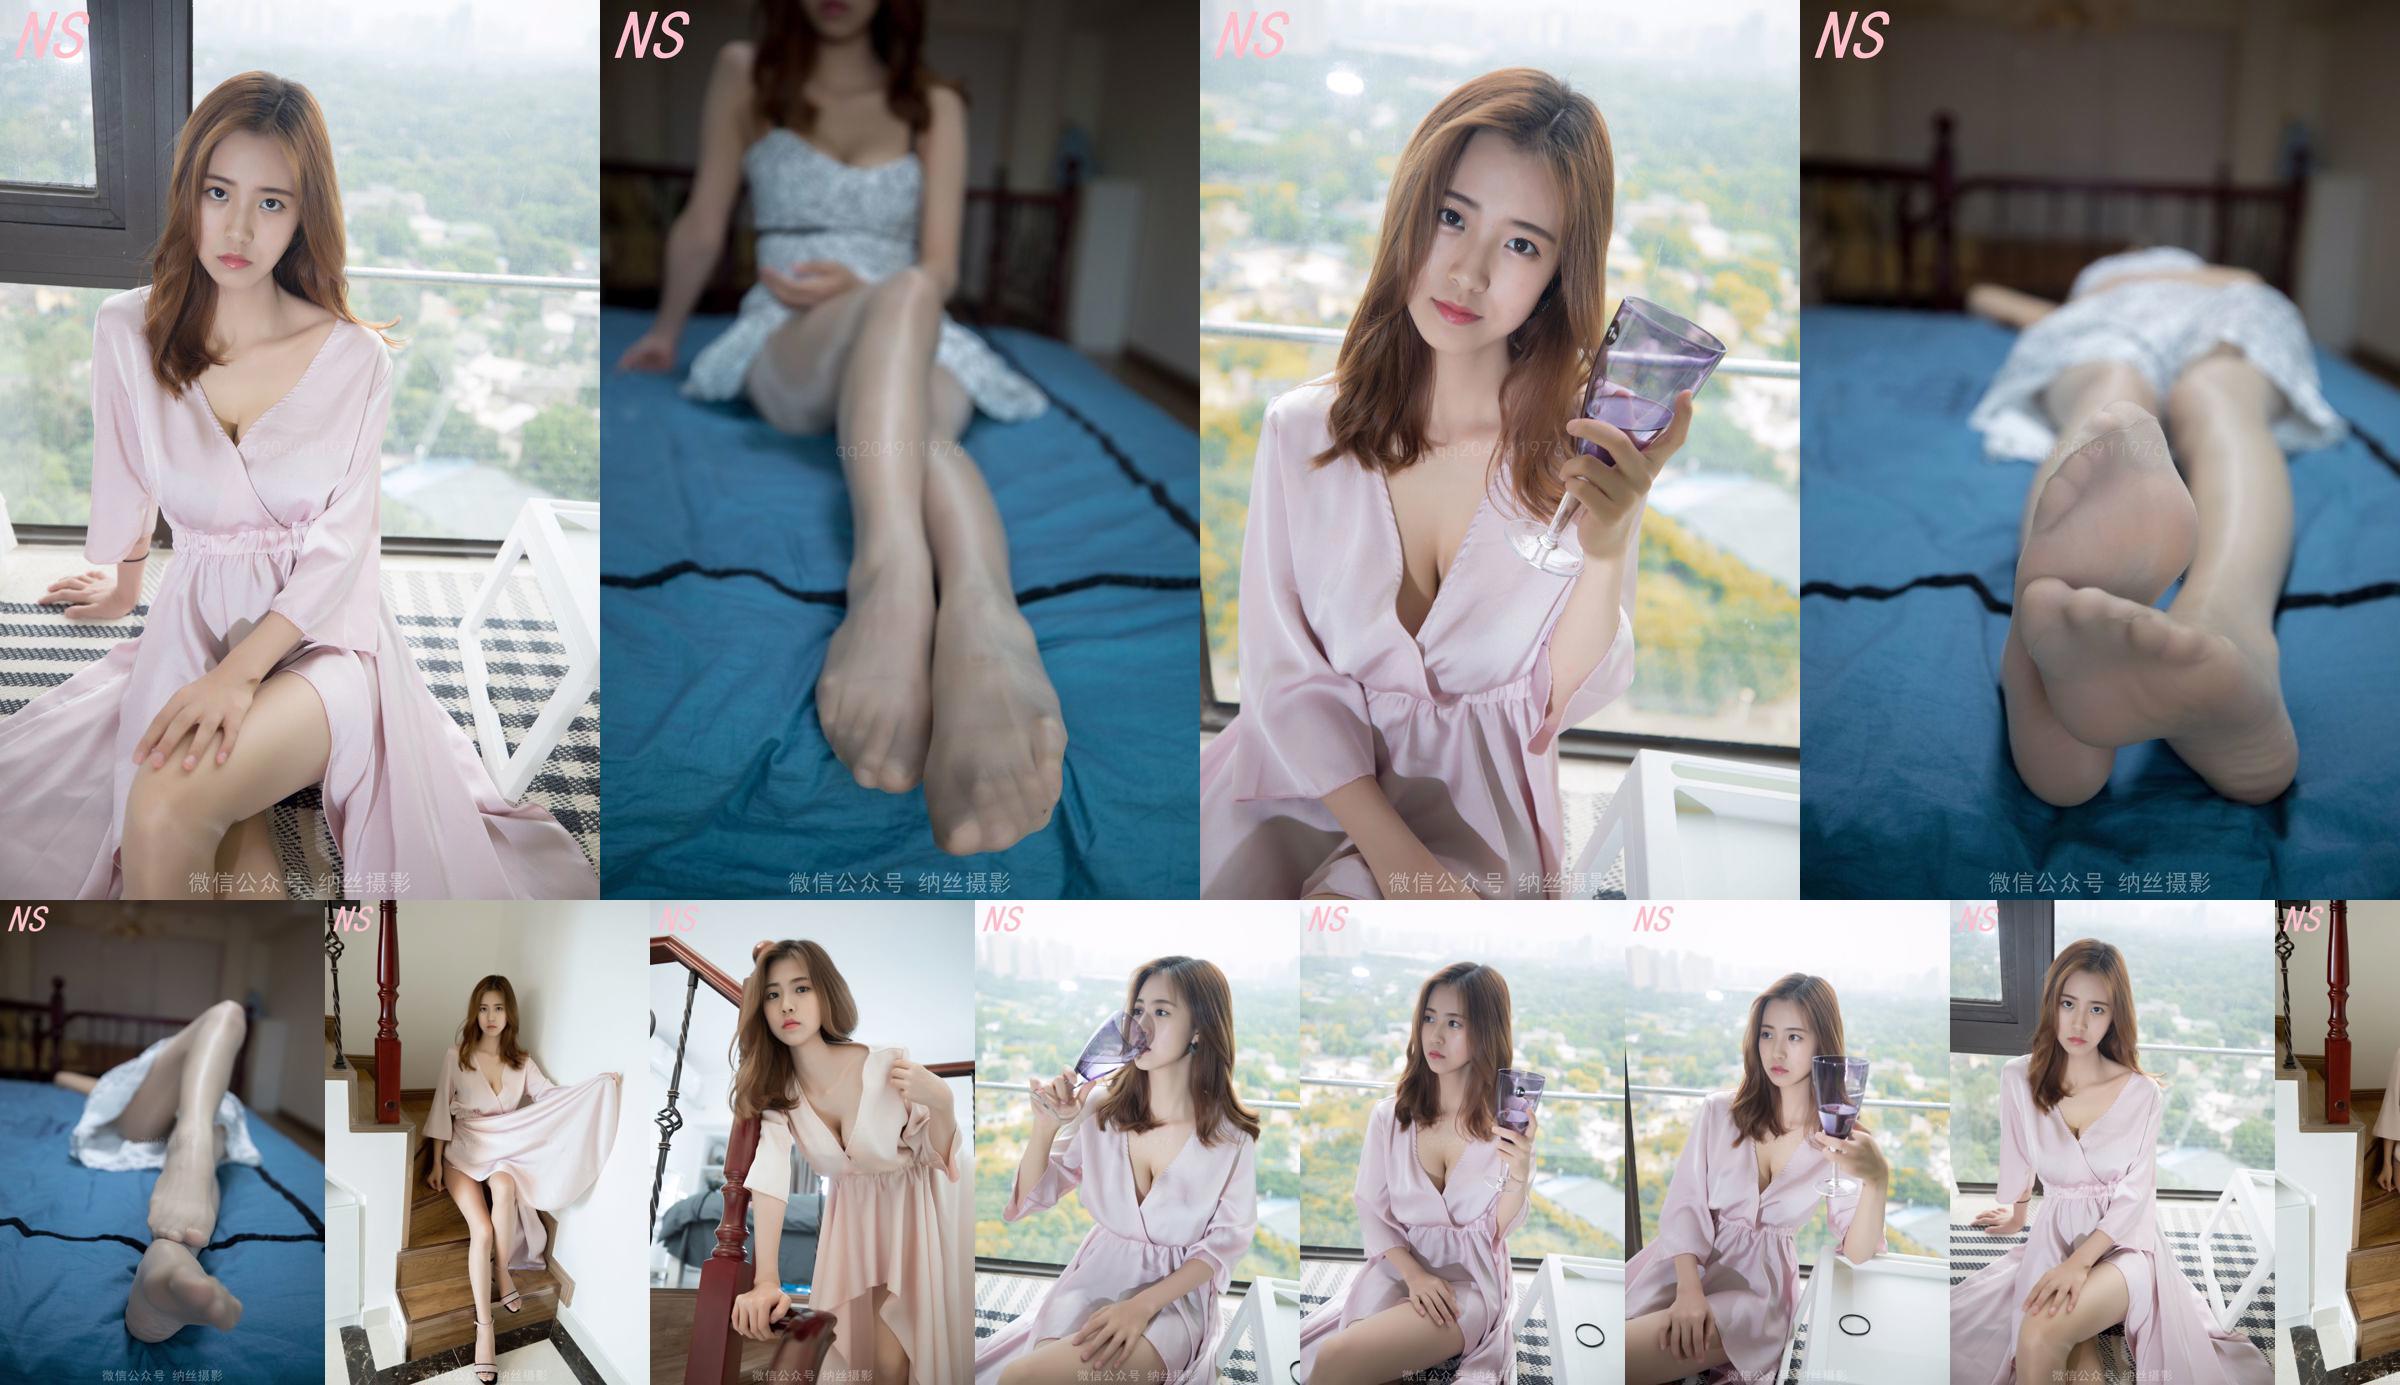 Presentadora de belleza Hanshuang "La tentación de los pijamas" [Nasi Photography] No.a72961 Página 18